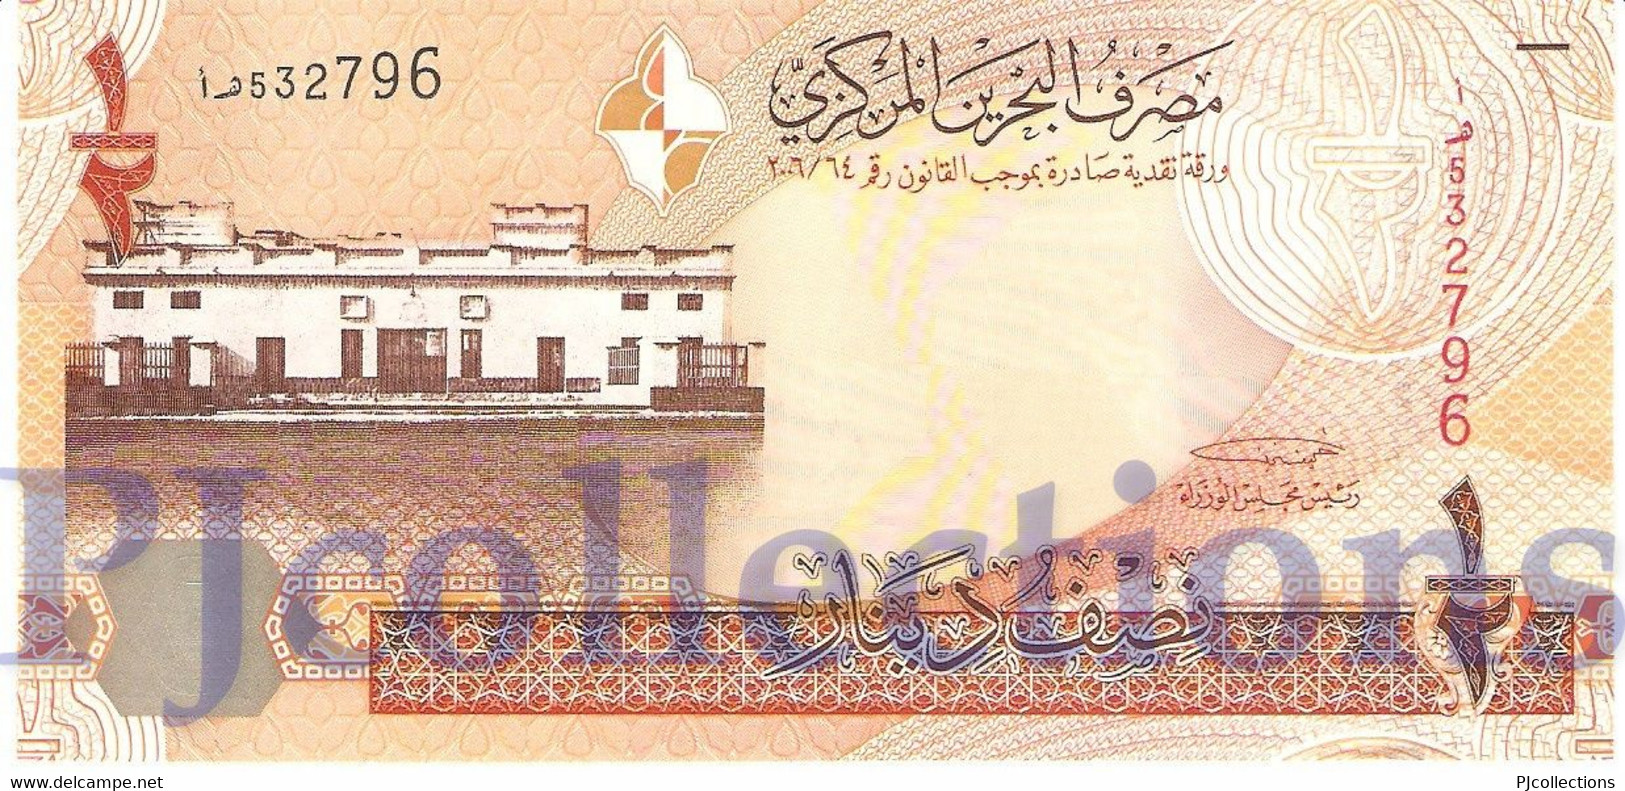 BAHRAIN 1/2 DINAR 2006 PICK 25 UNC - Bahrein